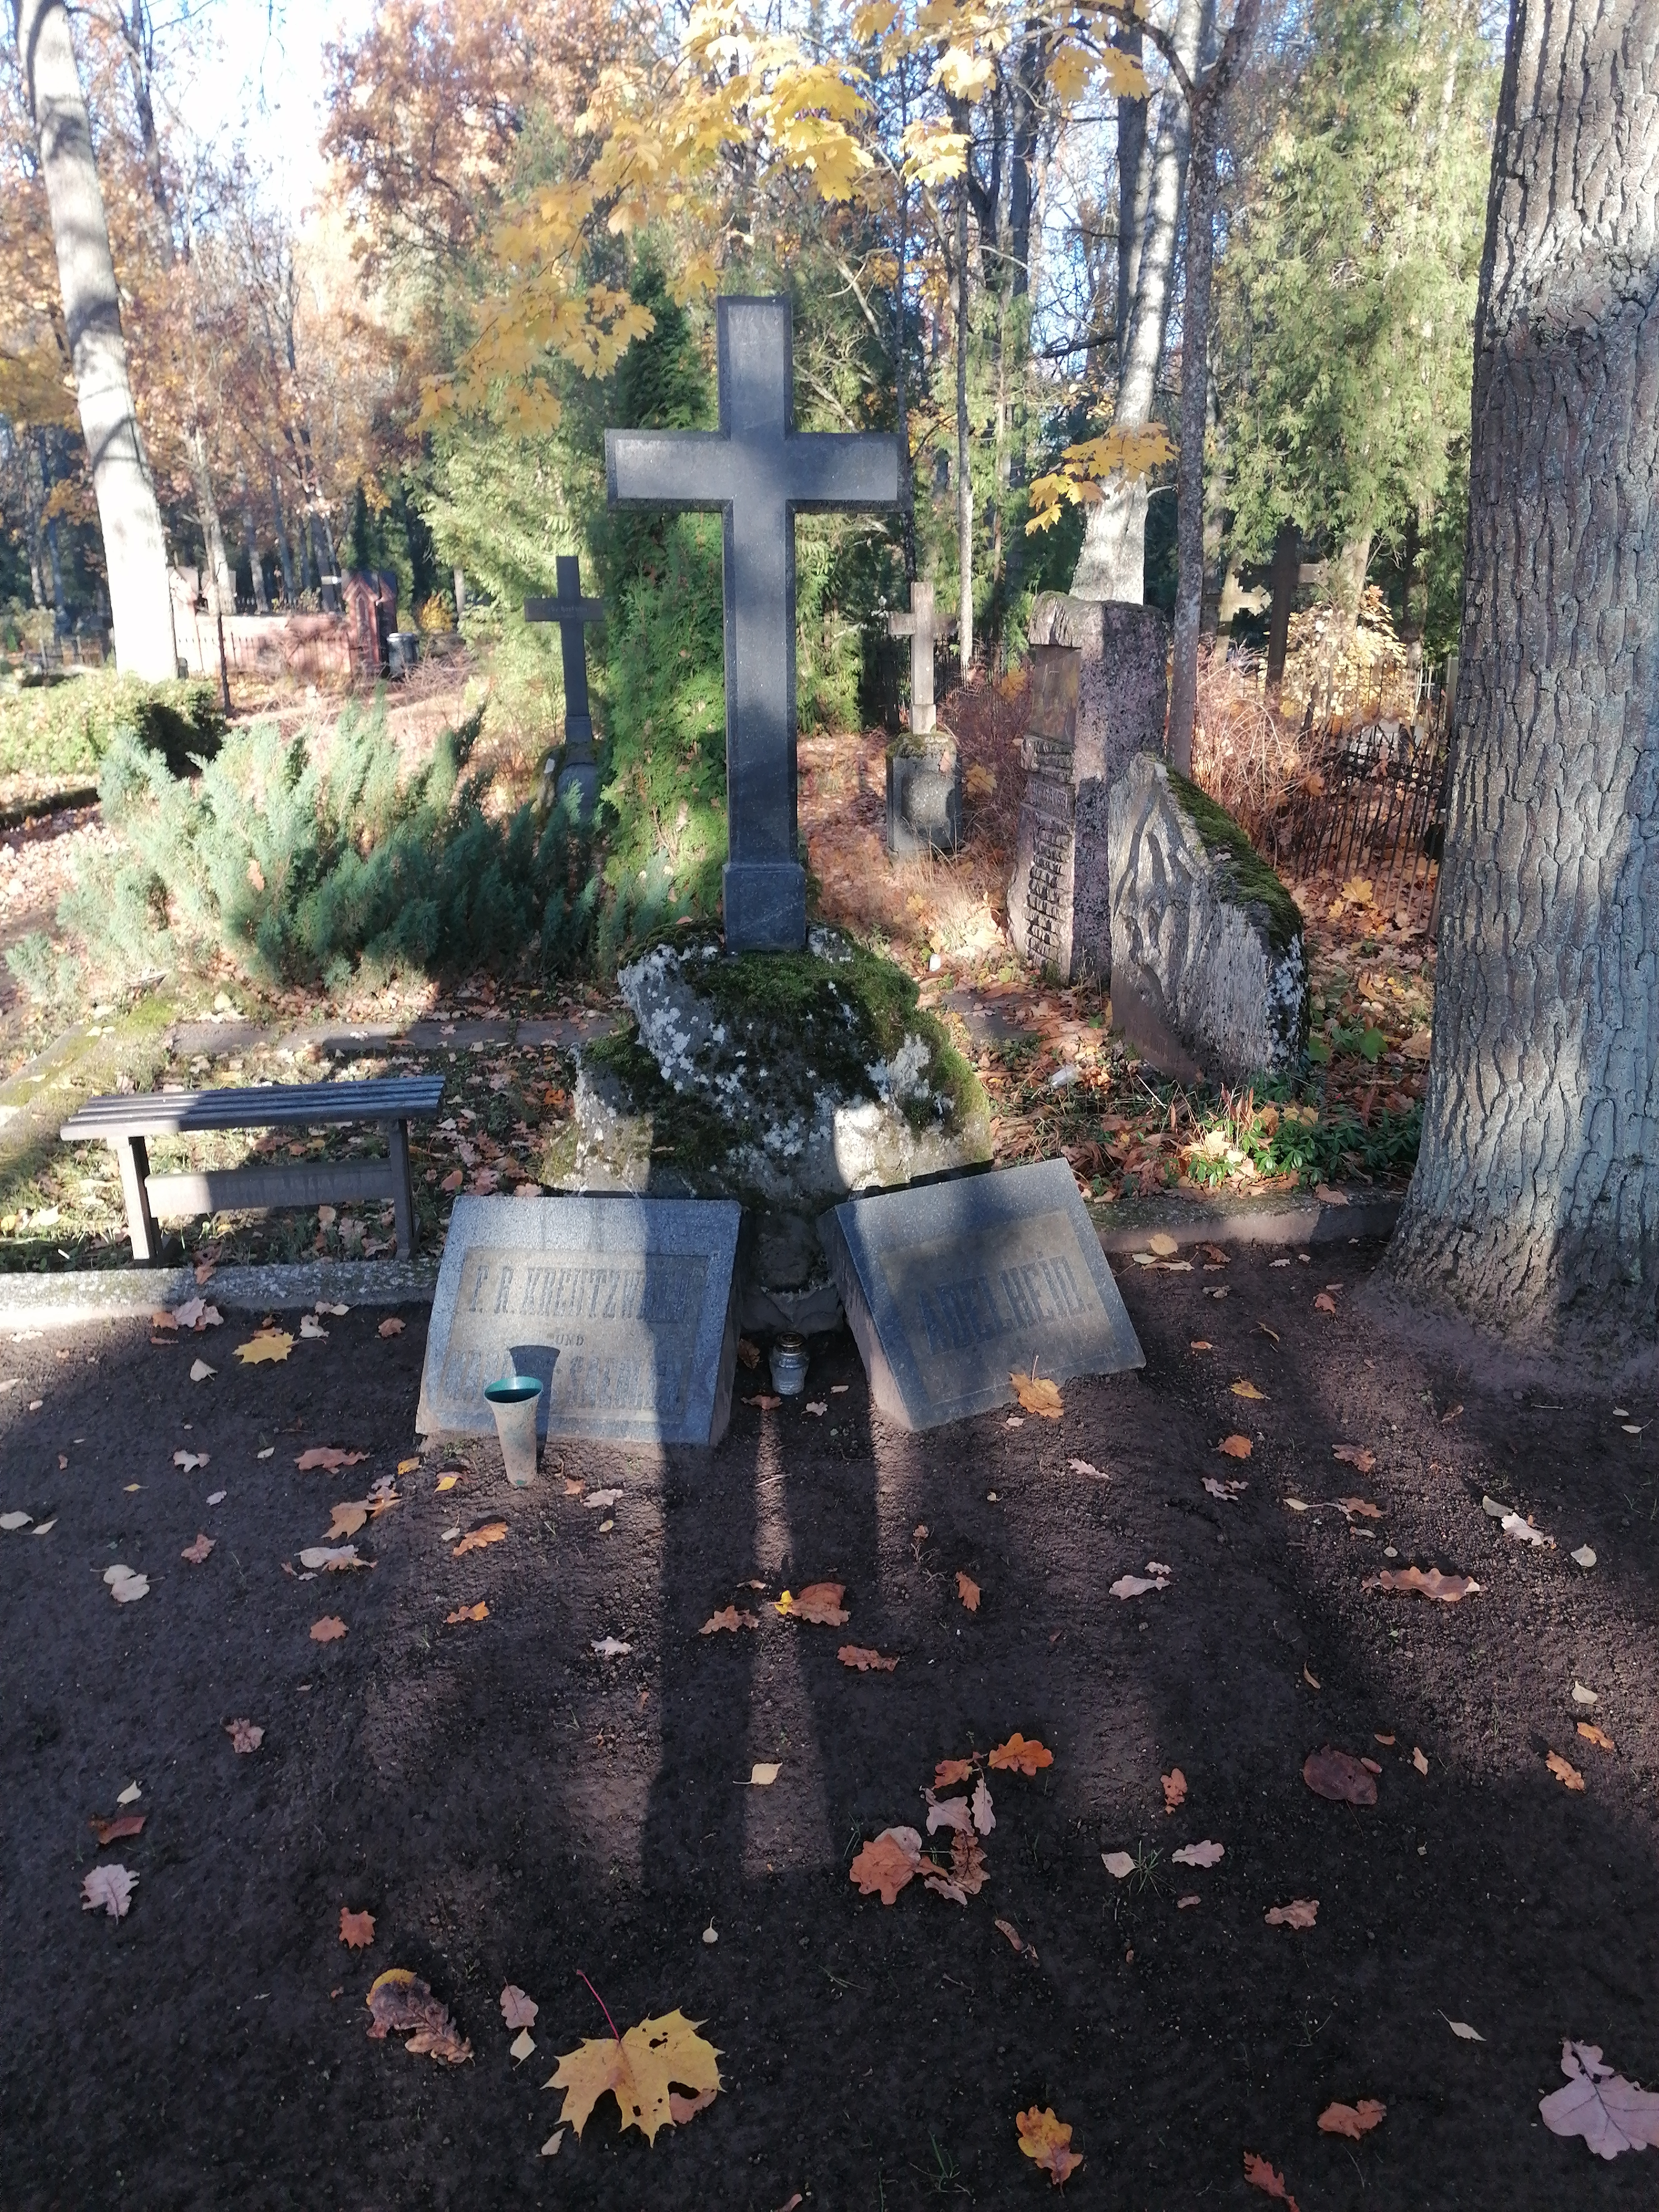 Dr. Fr. R. Kreutzwald's grave in Tartu : Ruhestätte v. Dr. Fr. R. Kreutzwald to Dorpat rephoto